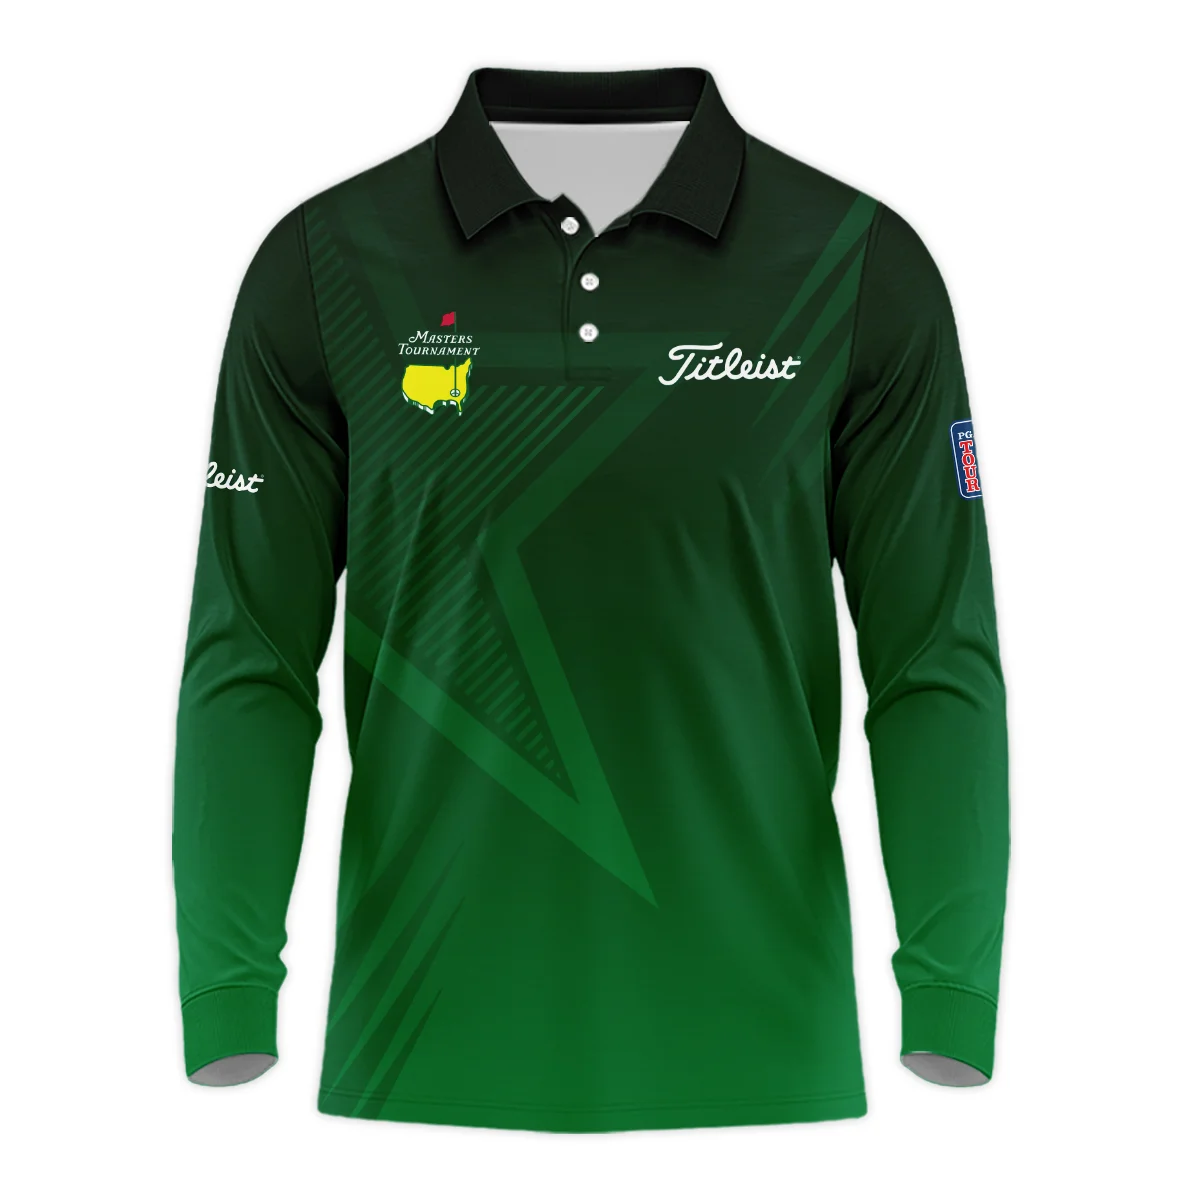 Titleist Masters Tournament Hoodie Shirt Dark Green Gradient Star Pattern Golf Sports Hoodie Shirt